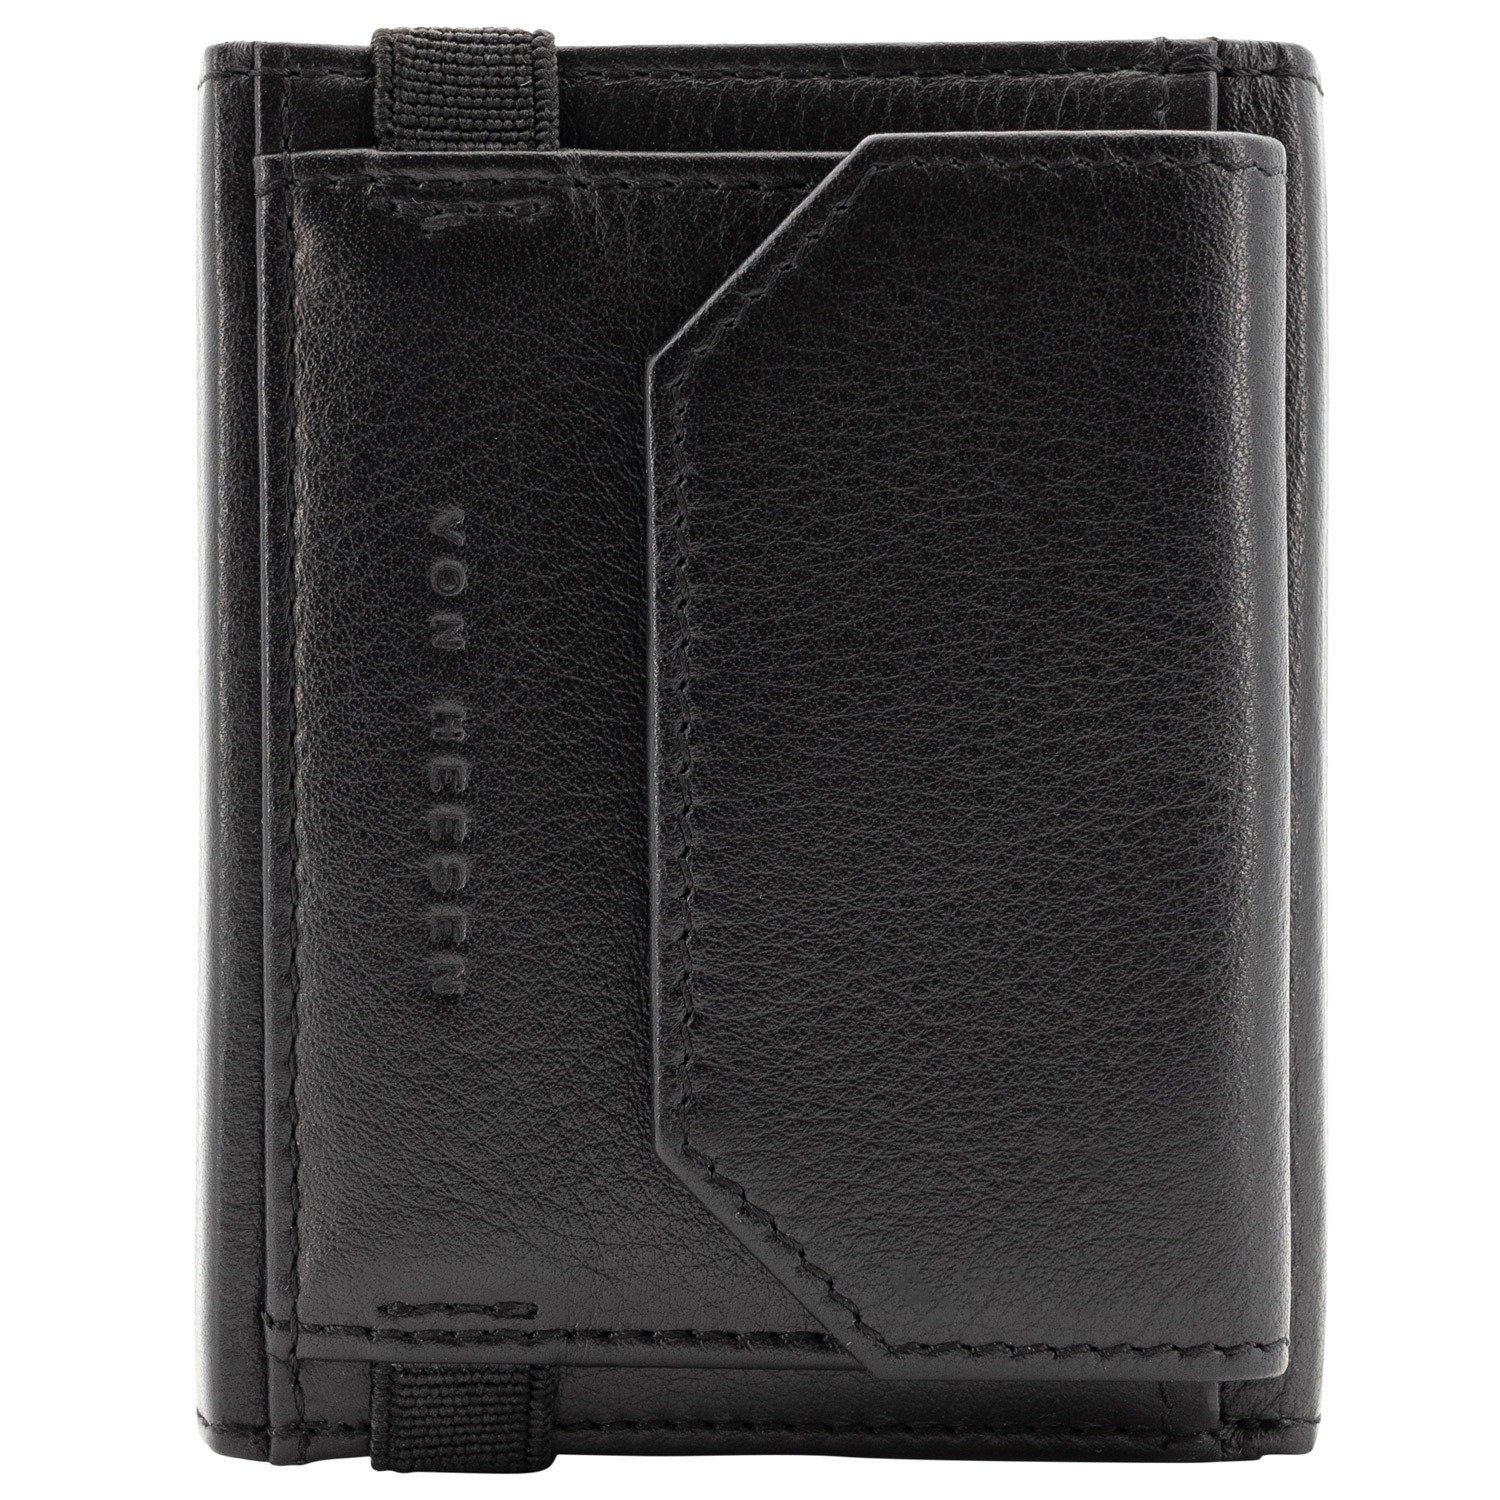 VON HEESEN Geldbörse Whizz & Wallet mit Portemonnaie RFID-Schutz Kartenfächer Geschenkbox Leder & Wallet inkl. (braun) Schwarz Slim 5 Geldbeutel XL-Münzfach